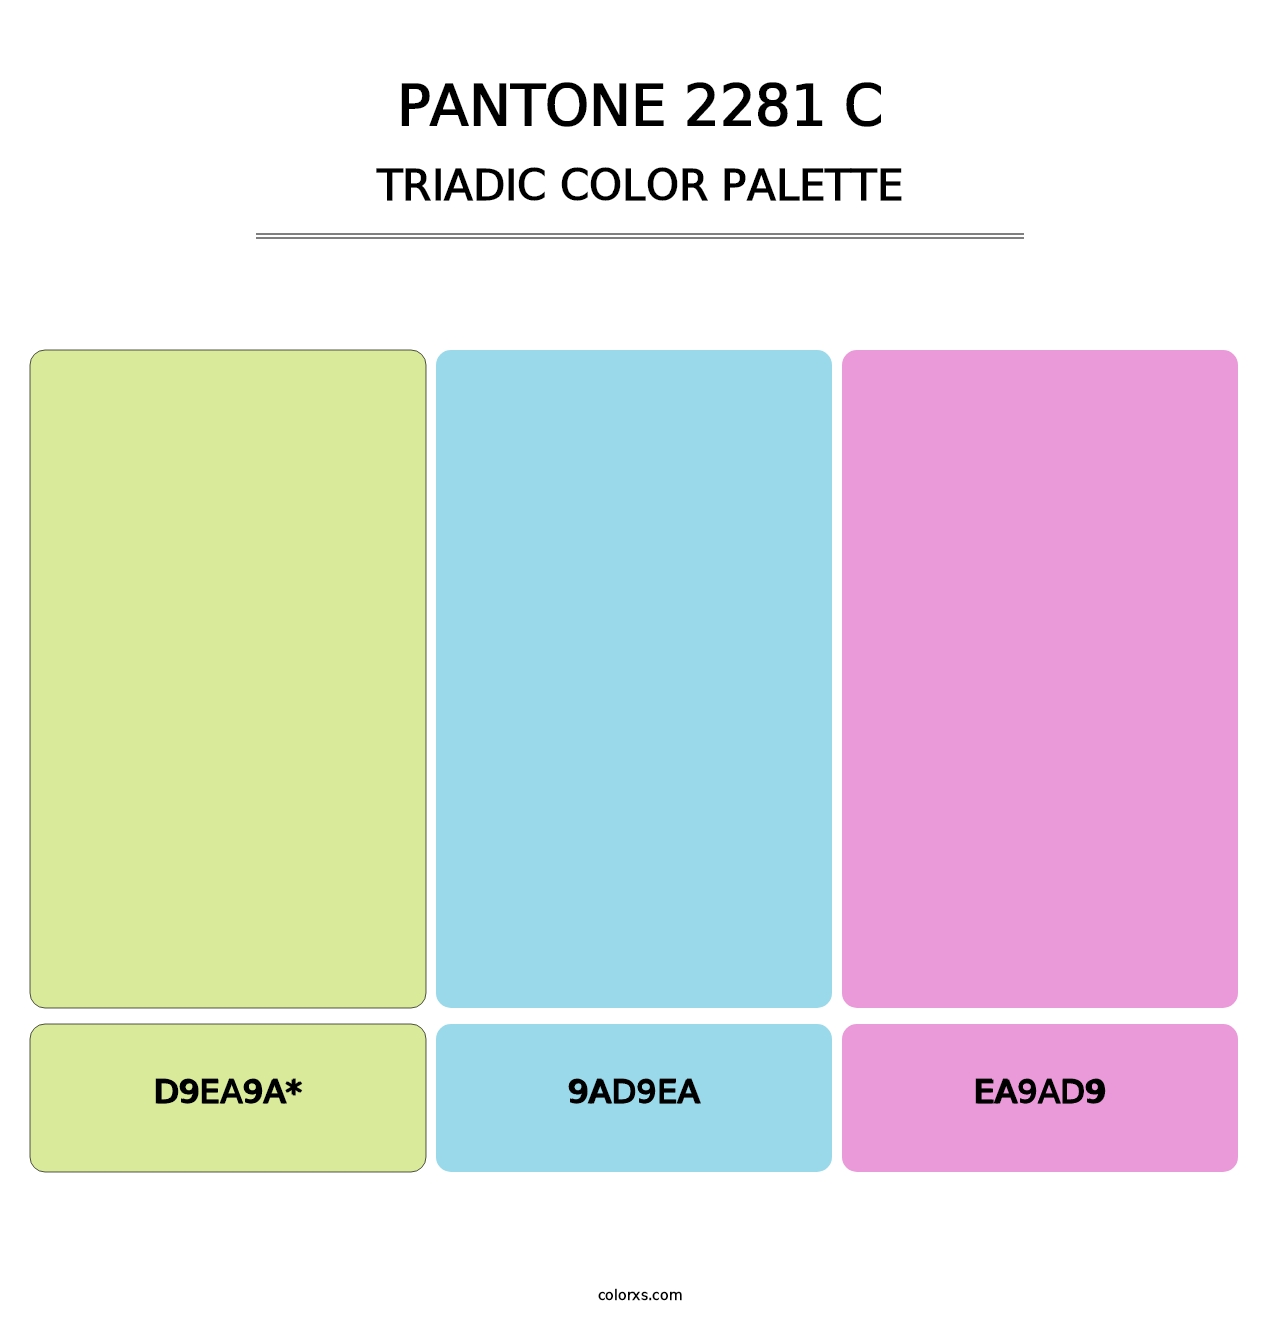 PANTONE 2281 C - Triadic Color Palette